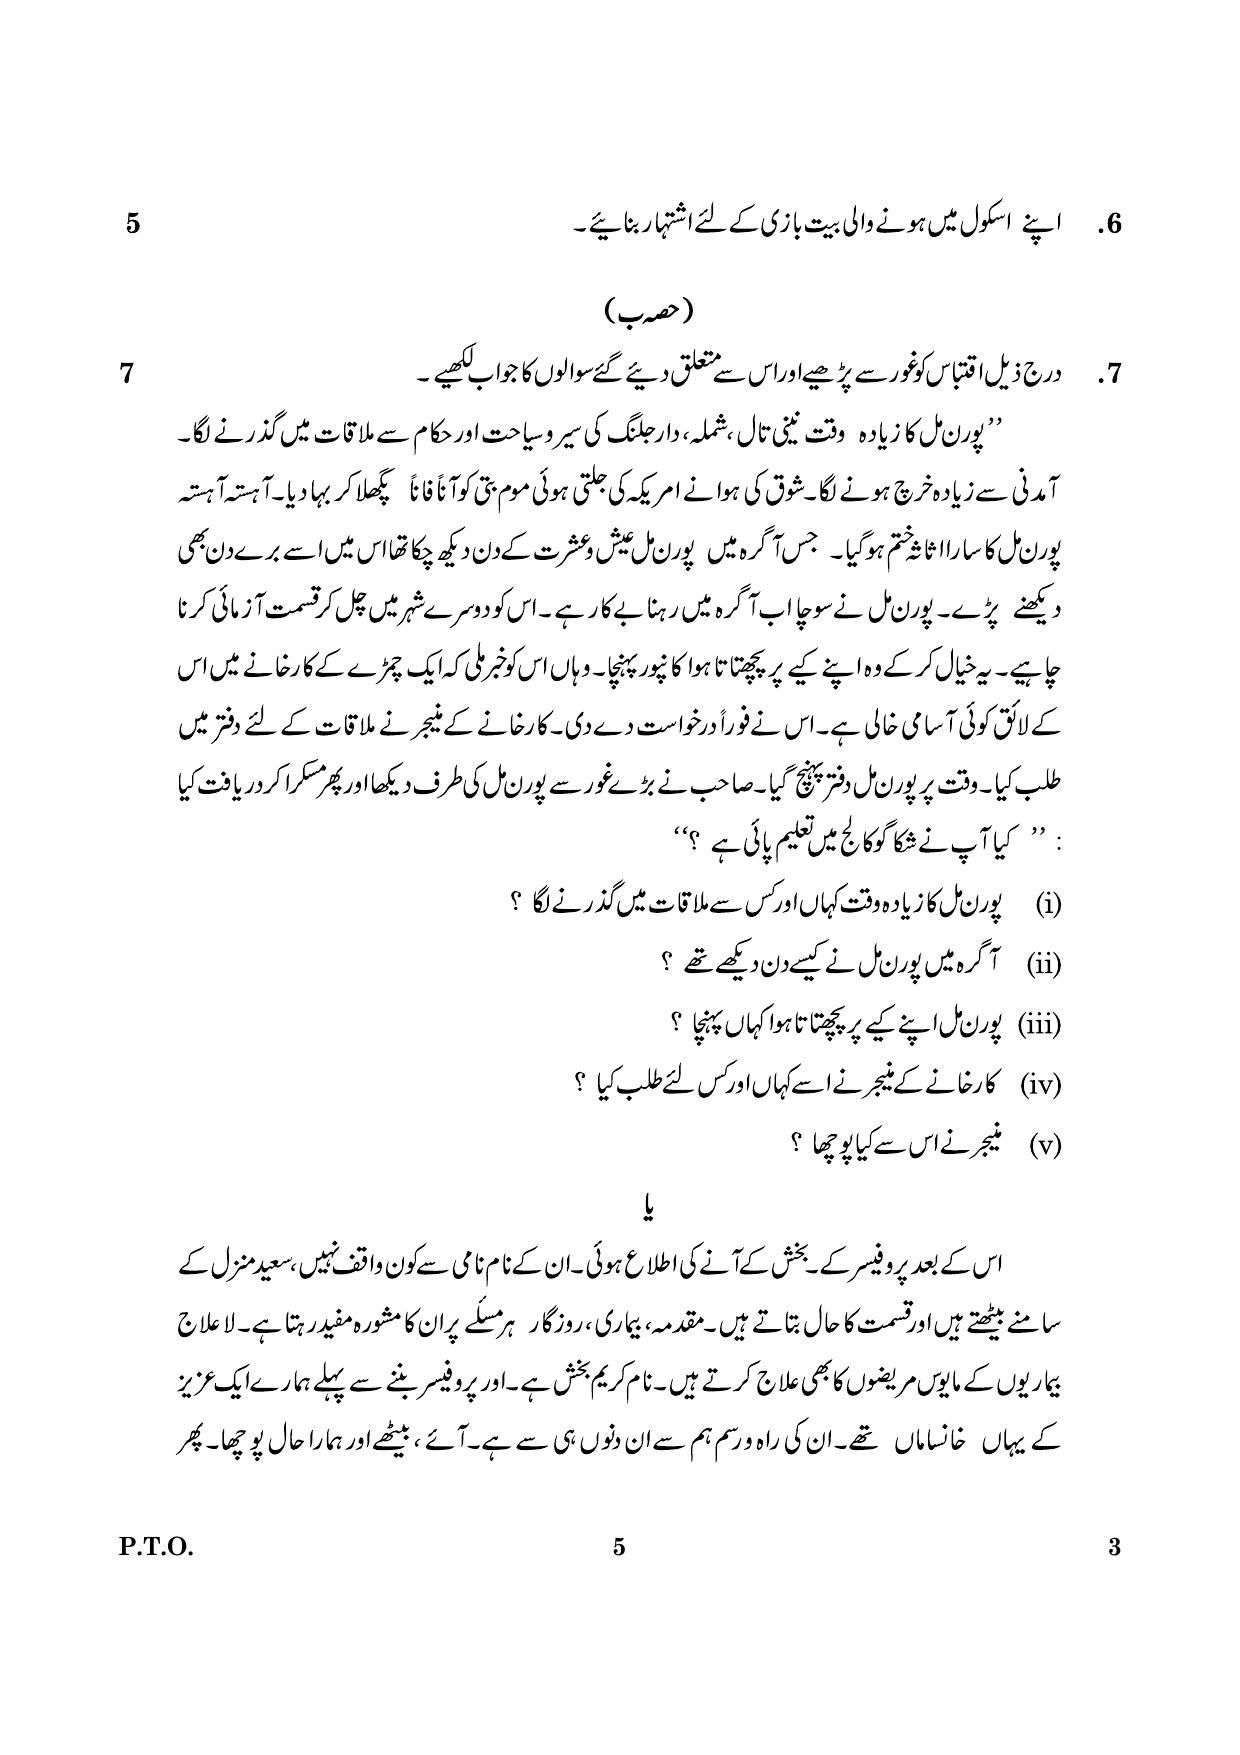 CBSE Class 12 003 Urdu Core 2016 Question Paper - Page 5